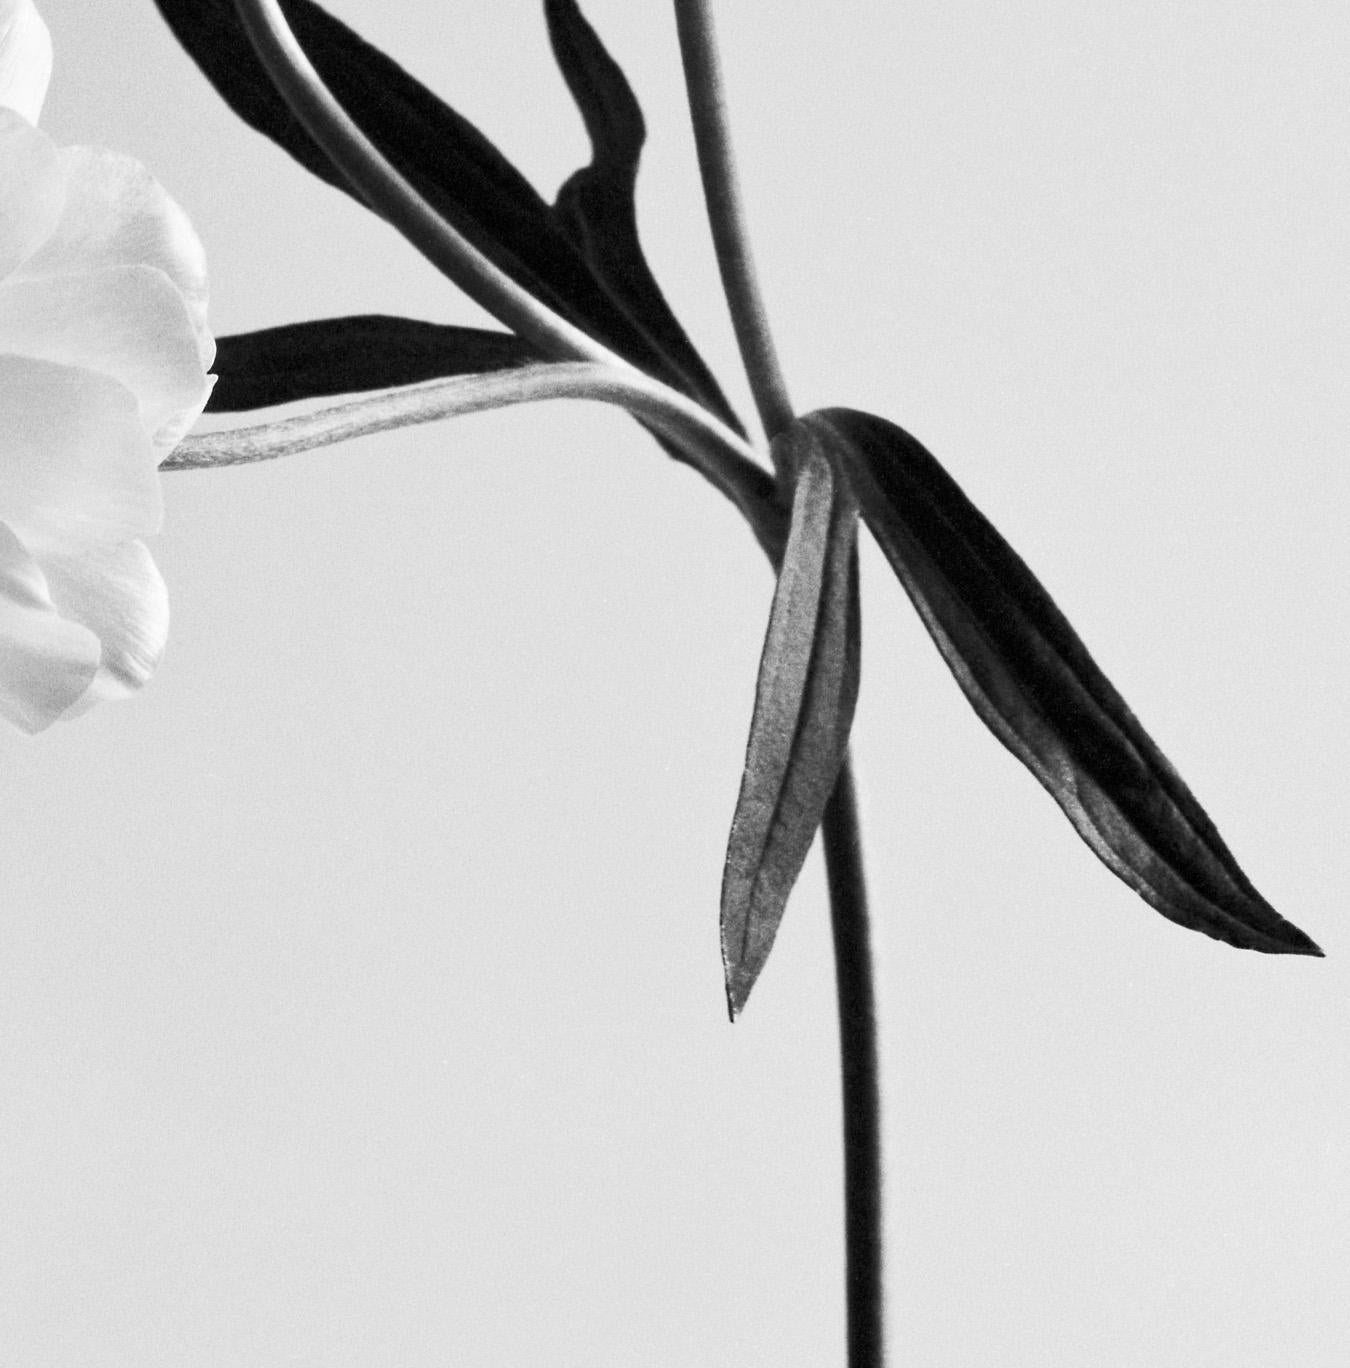 Ranunculus Butterfly no.2' photographié à Londres, Royaume-Uni 2023.

Il s'agit d'une photographie argentique en noir et blanc, réalisée avec un appareil Linhof 4x5 de grand format.

Impression giclée sur papier d'art Hahnemühle photo rag Baryta 308